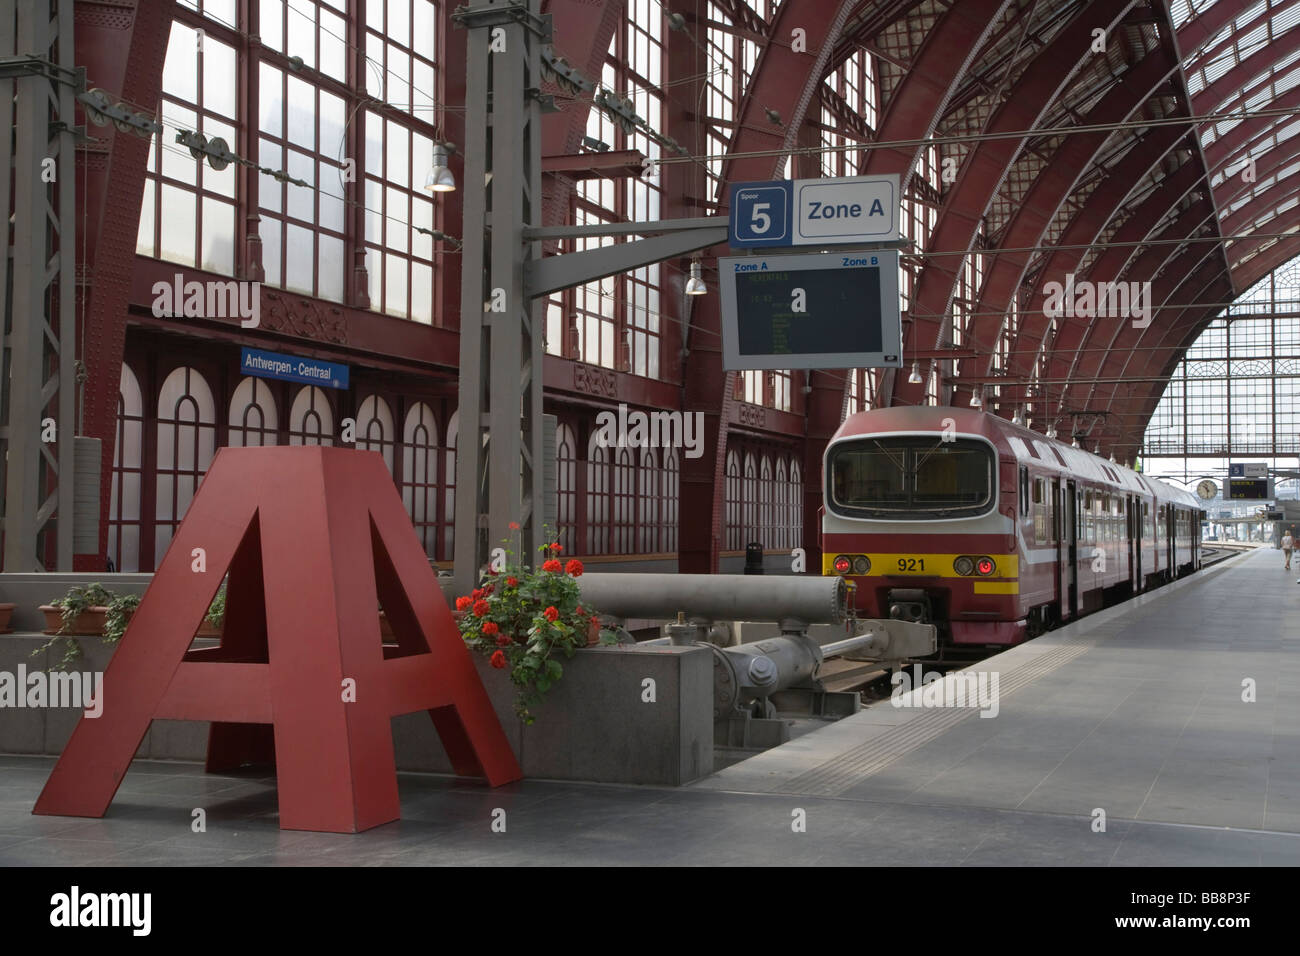 Antwerpen-Centraal, Antwerp Central railway station, Belgium Stock Photo